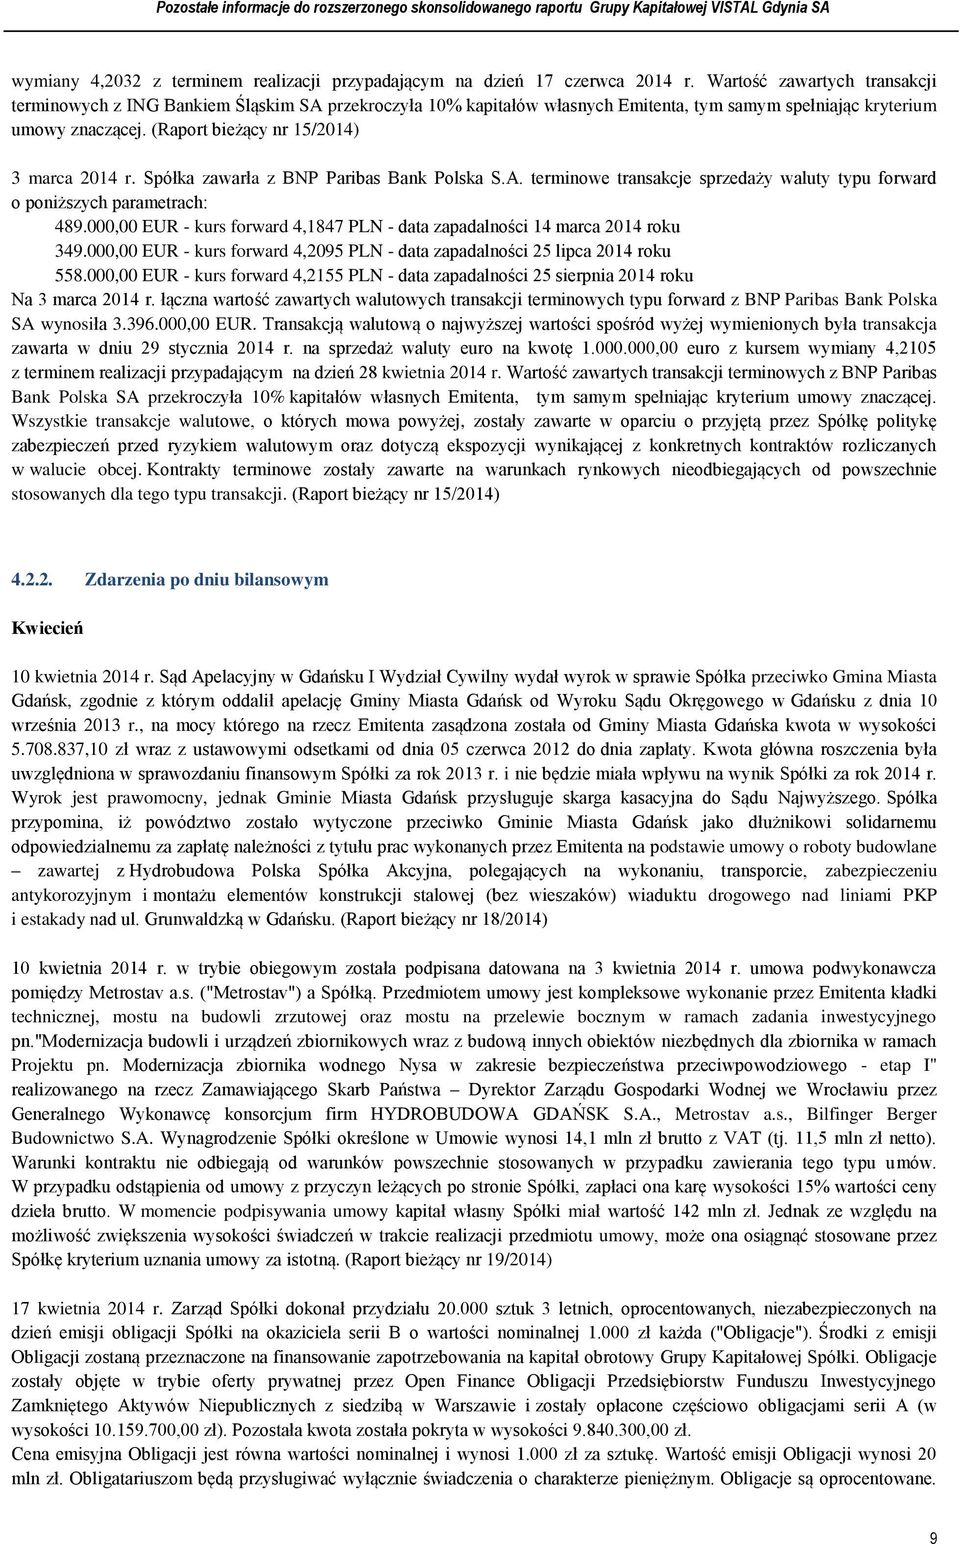 (Raport bieżący nr 15/2014) 3 marca 2014 r. Spółka zawarła z BNP Paribas Bank Polska S.A. terminowe transakcje sprzedaży waluty typu forward o poniższych parametrach: 489.